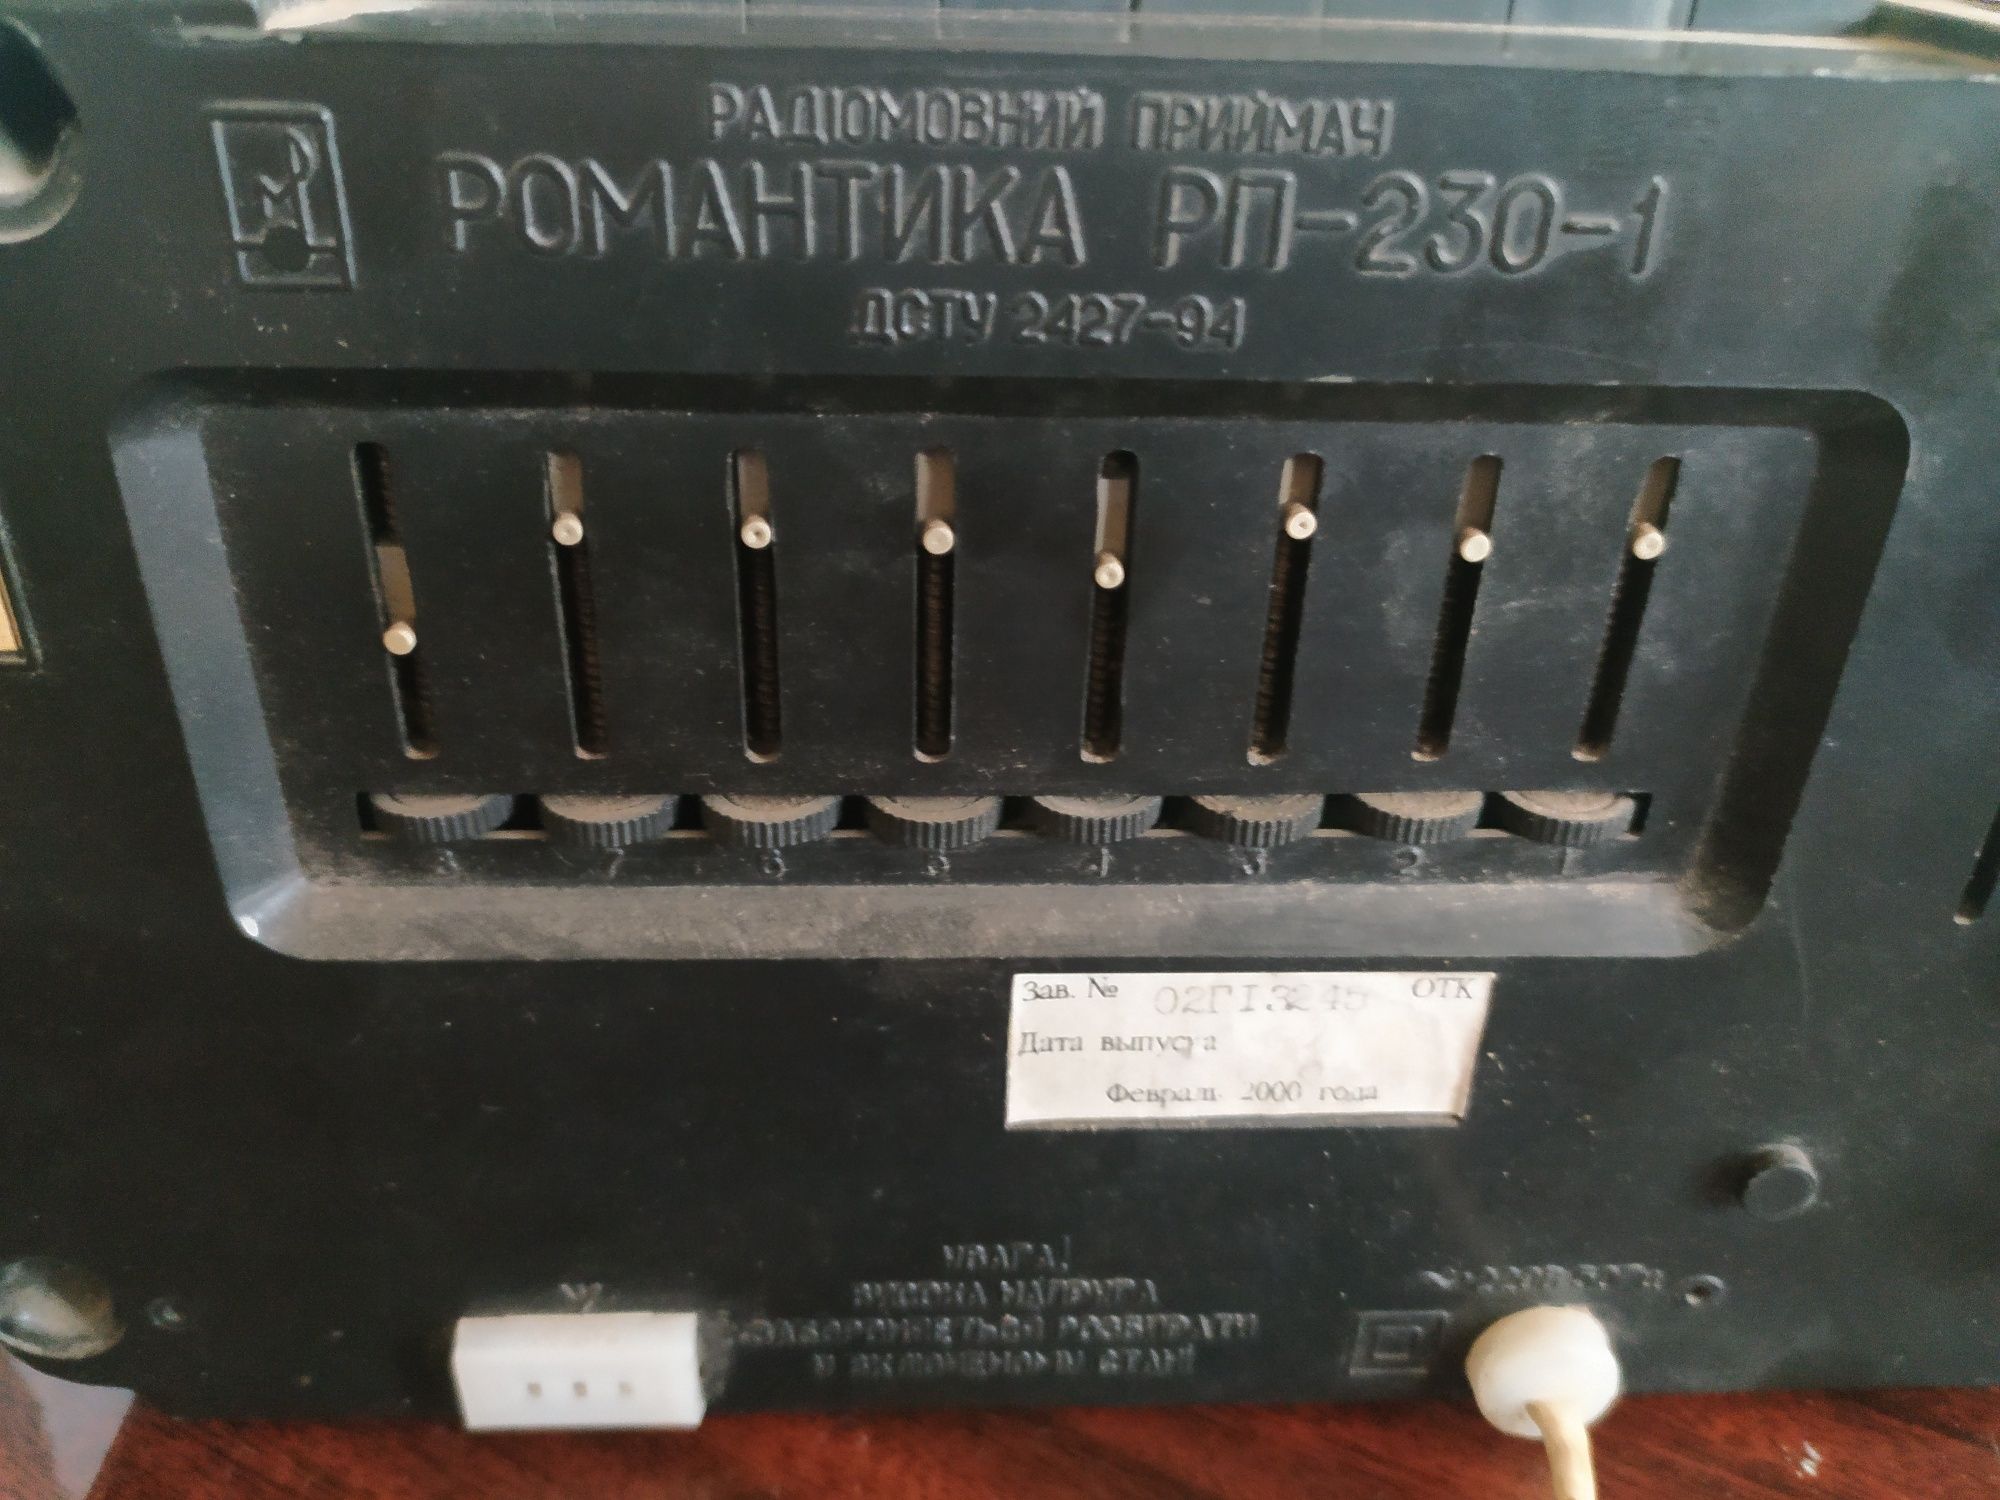 Продам радиоприемник Романтика РП-230-1